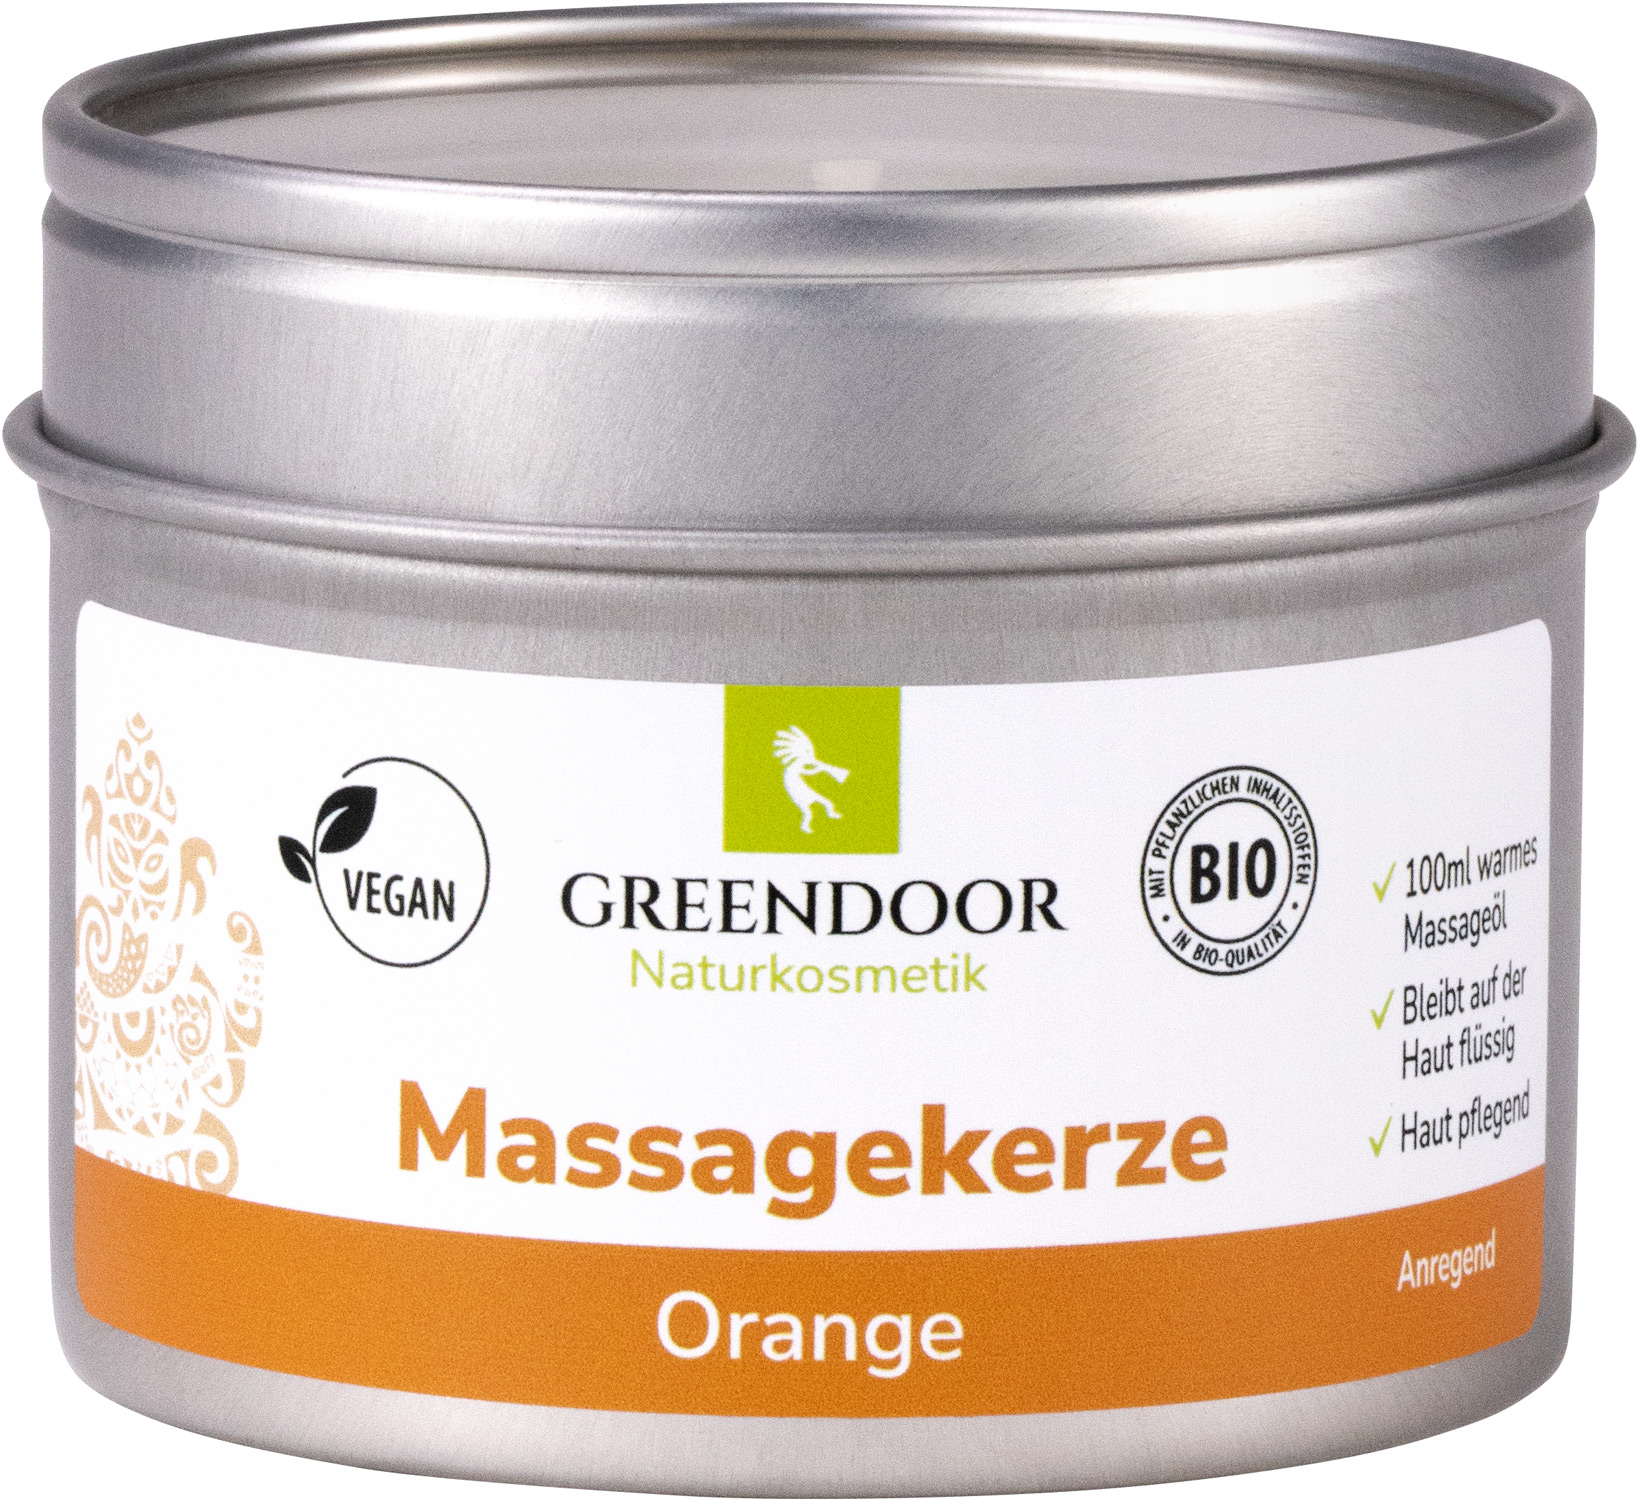 Massagekerze Orange 100ml, vegane Romantik Massage für perfekte Stunden zu zweit